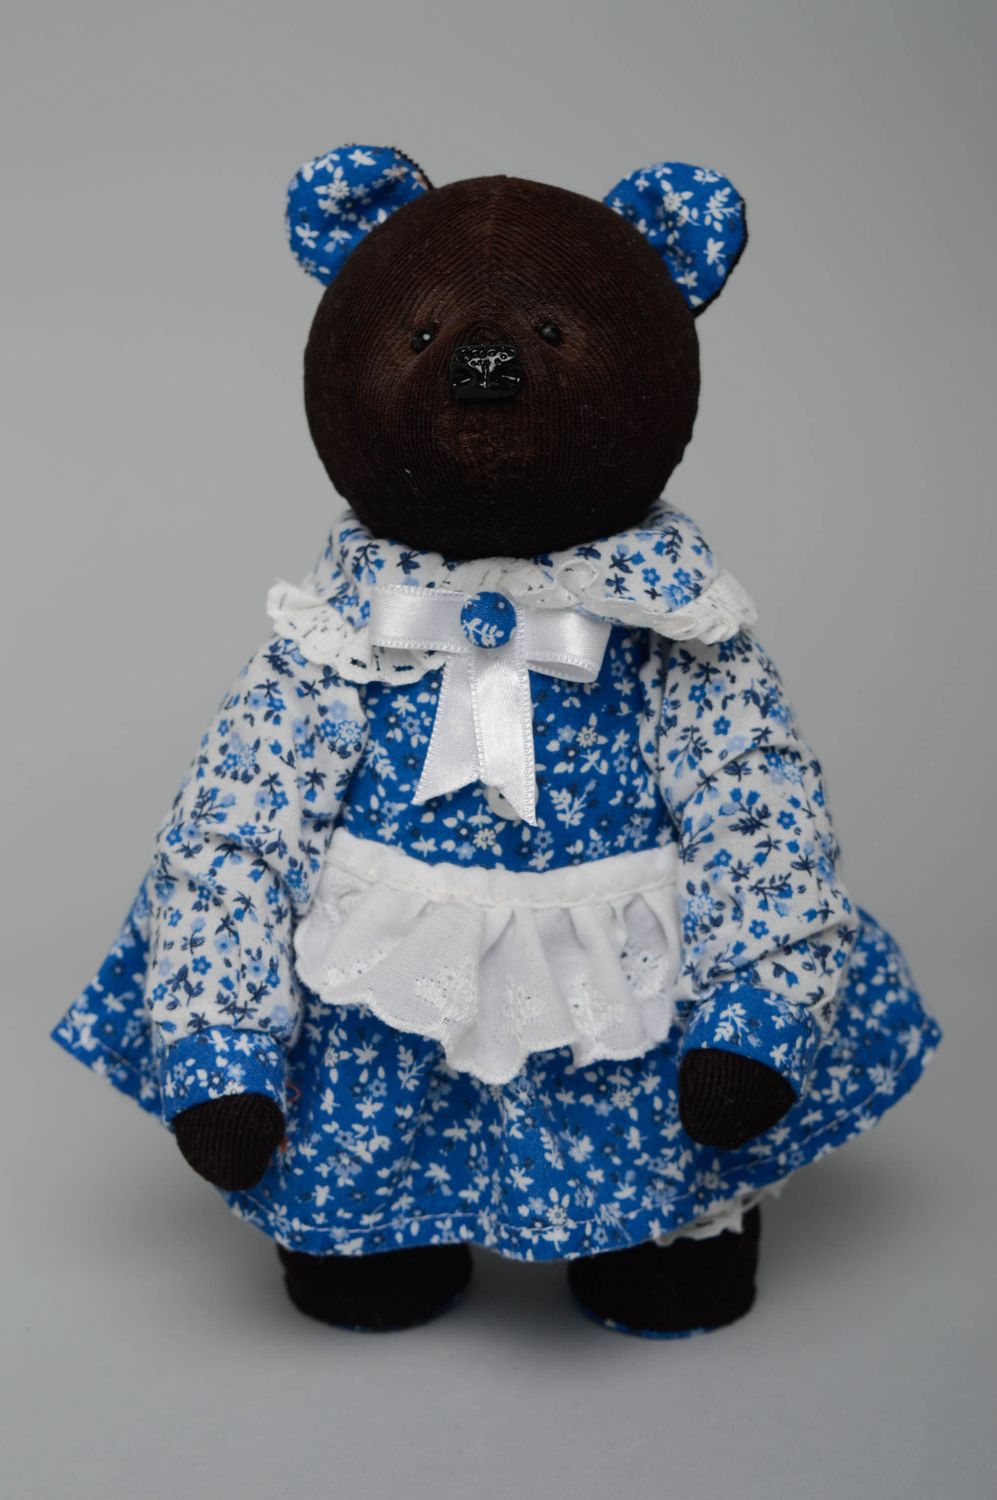 Textil Kuscheltier Bär im Kleid foto 1